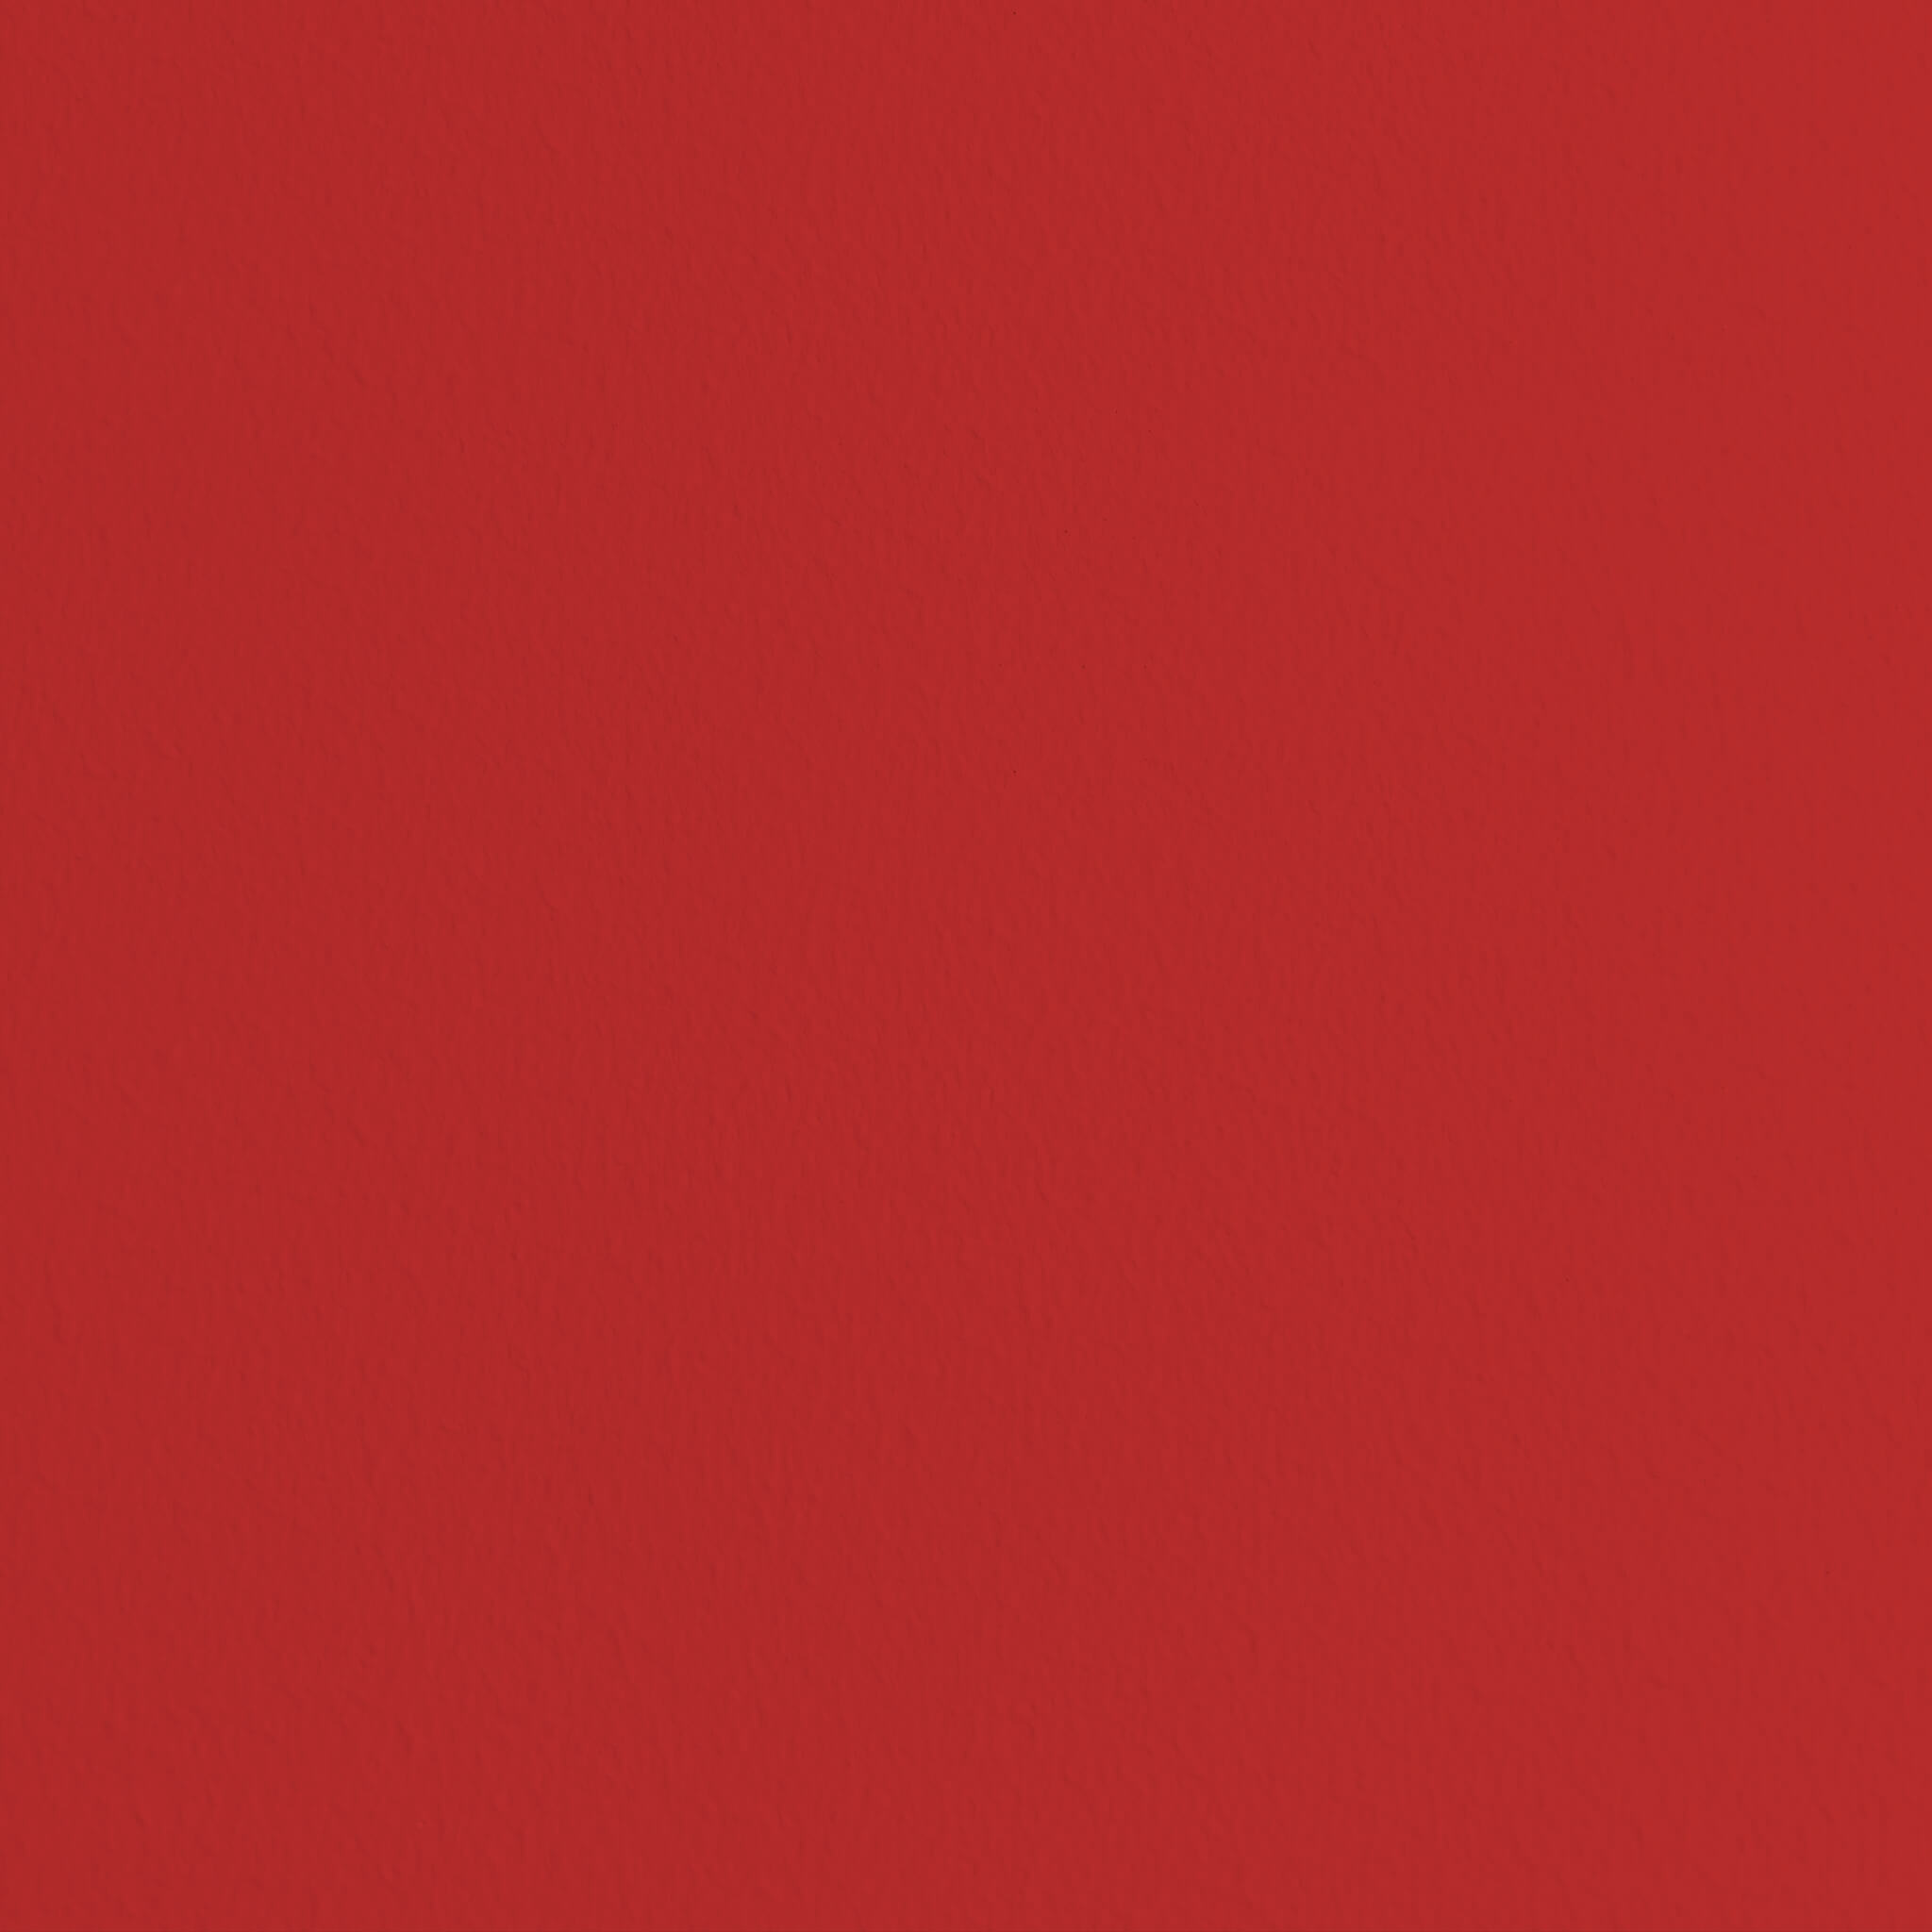 Mylands FTT 009 Bright Red - Marble Matt Emulsion / Wandfarbe, 5L